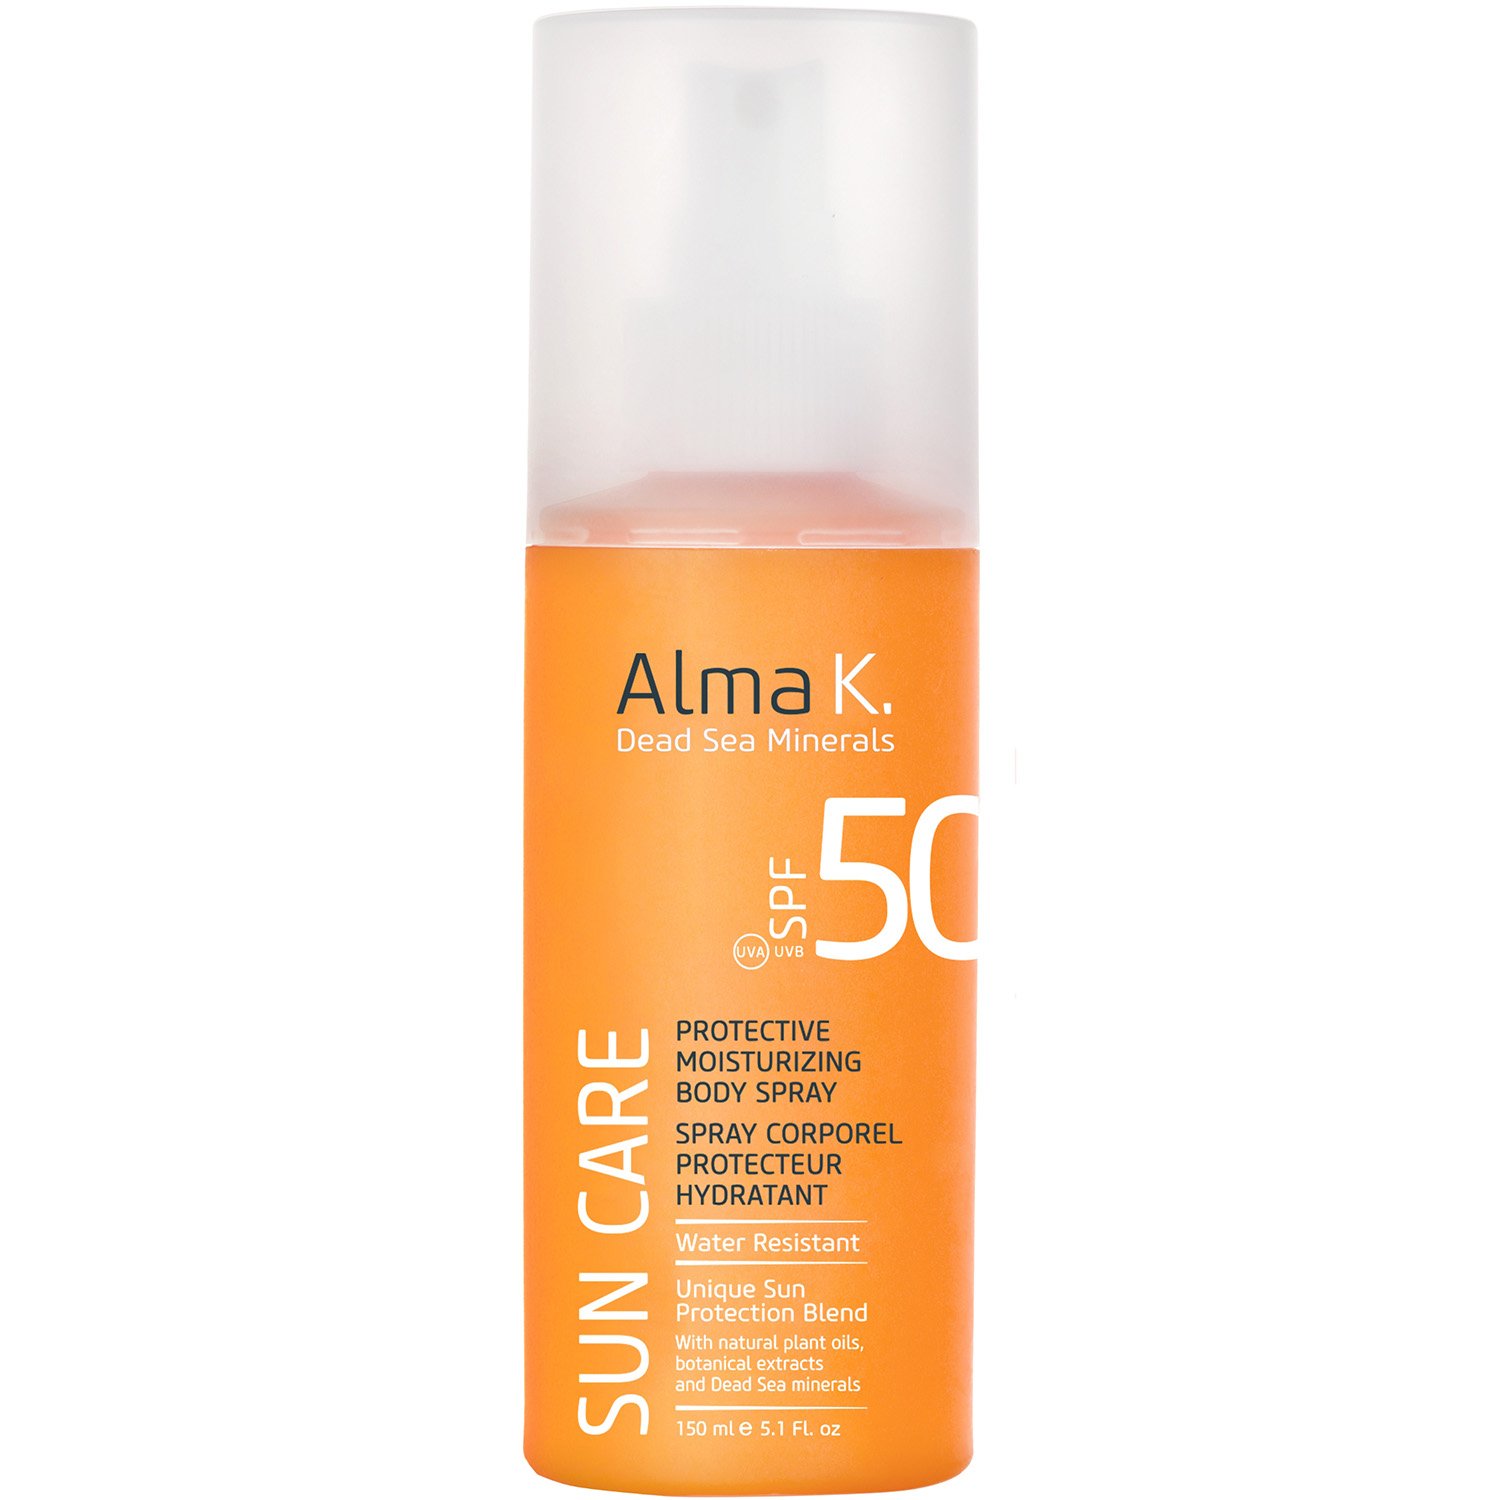 Сонцезахисний спрей для тіла Alma K Sun Care Protective Moisturizing Body Spray SPF 50, 150 мл (121591) - фото 1